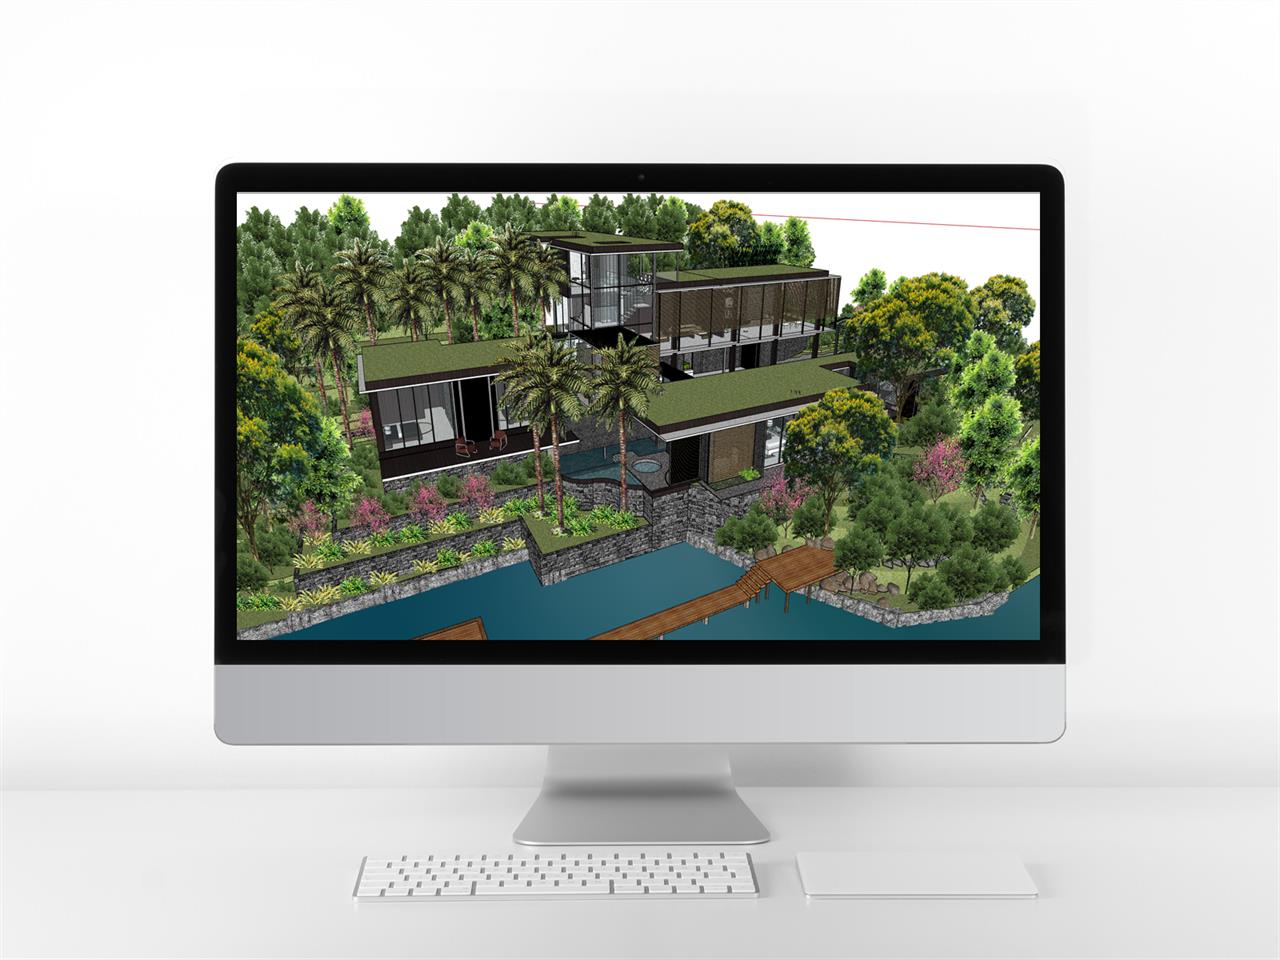 세련된 별장주택 디자인 웹툰배경 템플릿 제작 미리보기